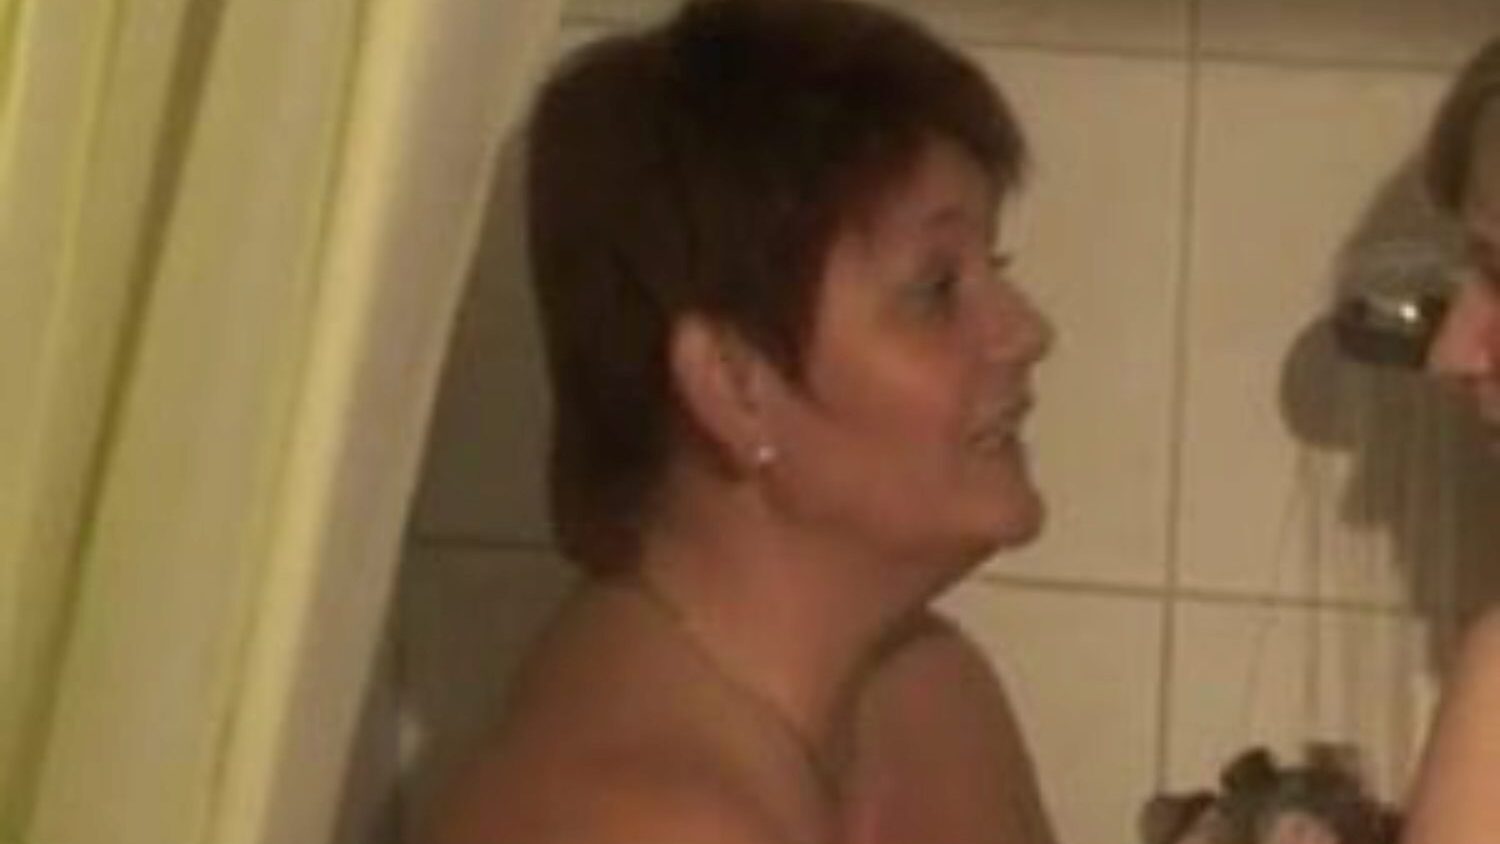 két két lány zuhanyozás: ingyenes leszbikus pornó videó 76 - xhamster 2 két lányos zuhanyzó cső szeretetteljes filmjelenet mindenki számára ingyenesen a xhamsteren, a német leszbikus uralkodó gyűjteményével, anyámkal szeretnék baszni és bbw pornográfia filmsorozatok